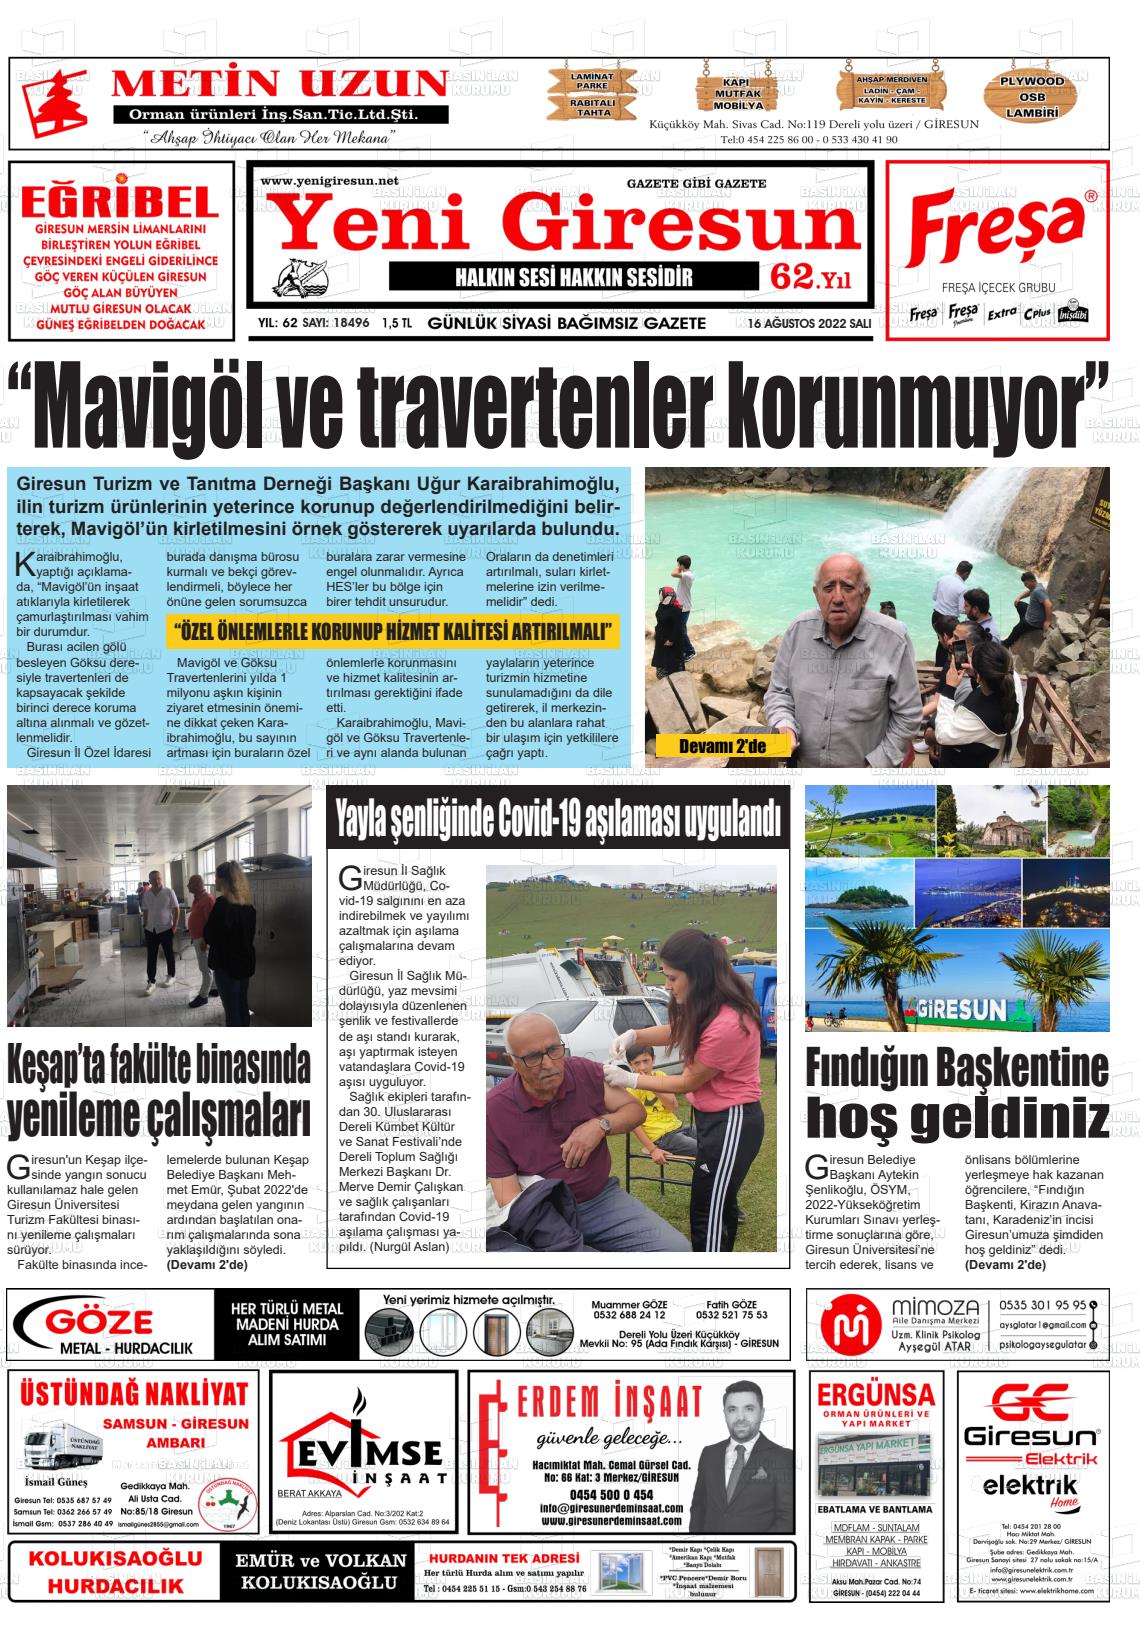 16 Ağustos 2022 Yeni Giresun Gazete Manşeti